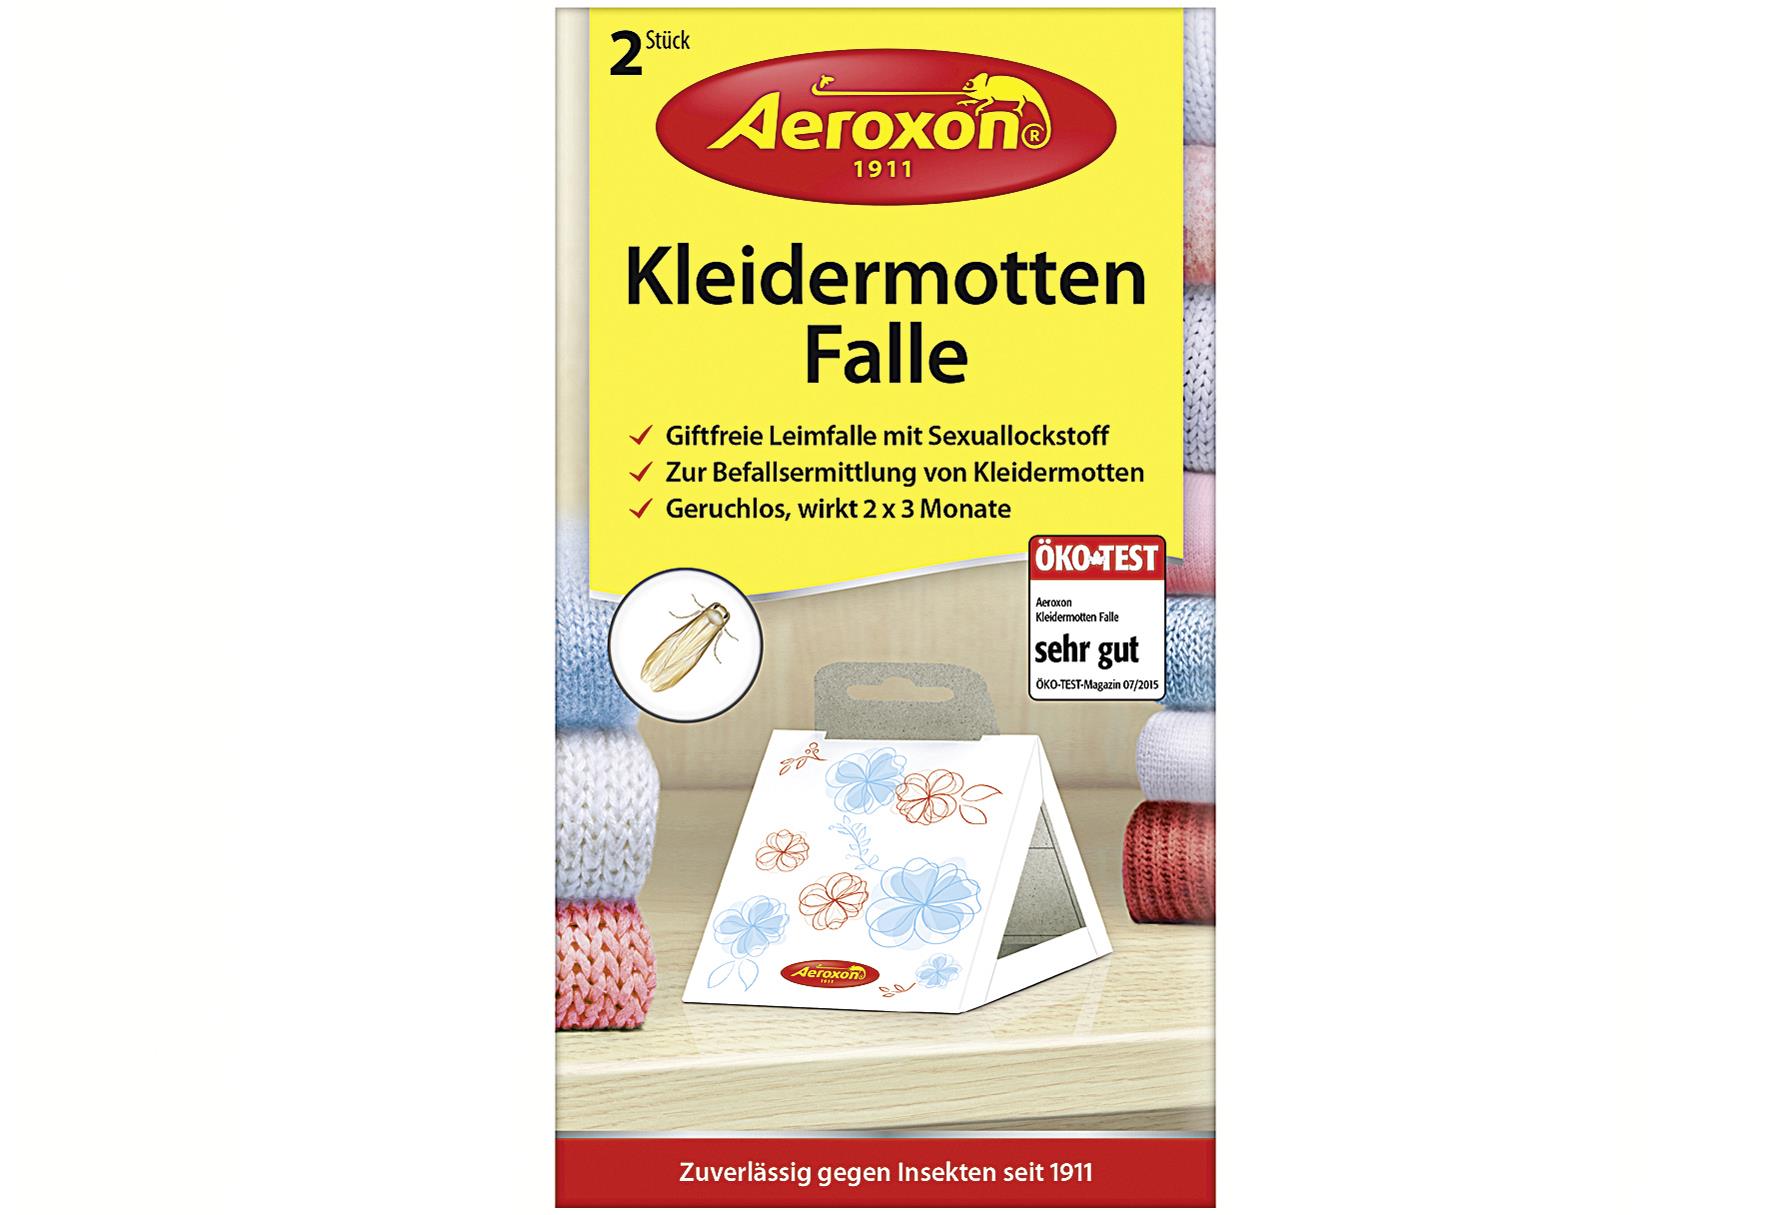 Aeroxon Kleidermotten-Falle 2 Stück